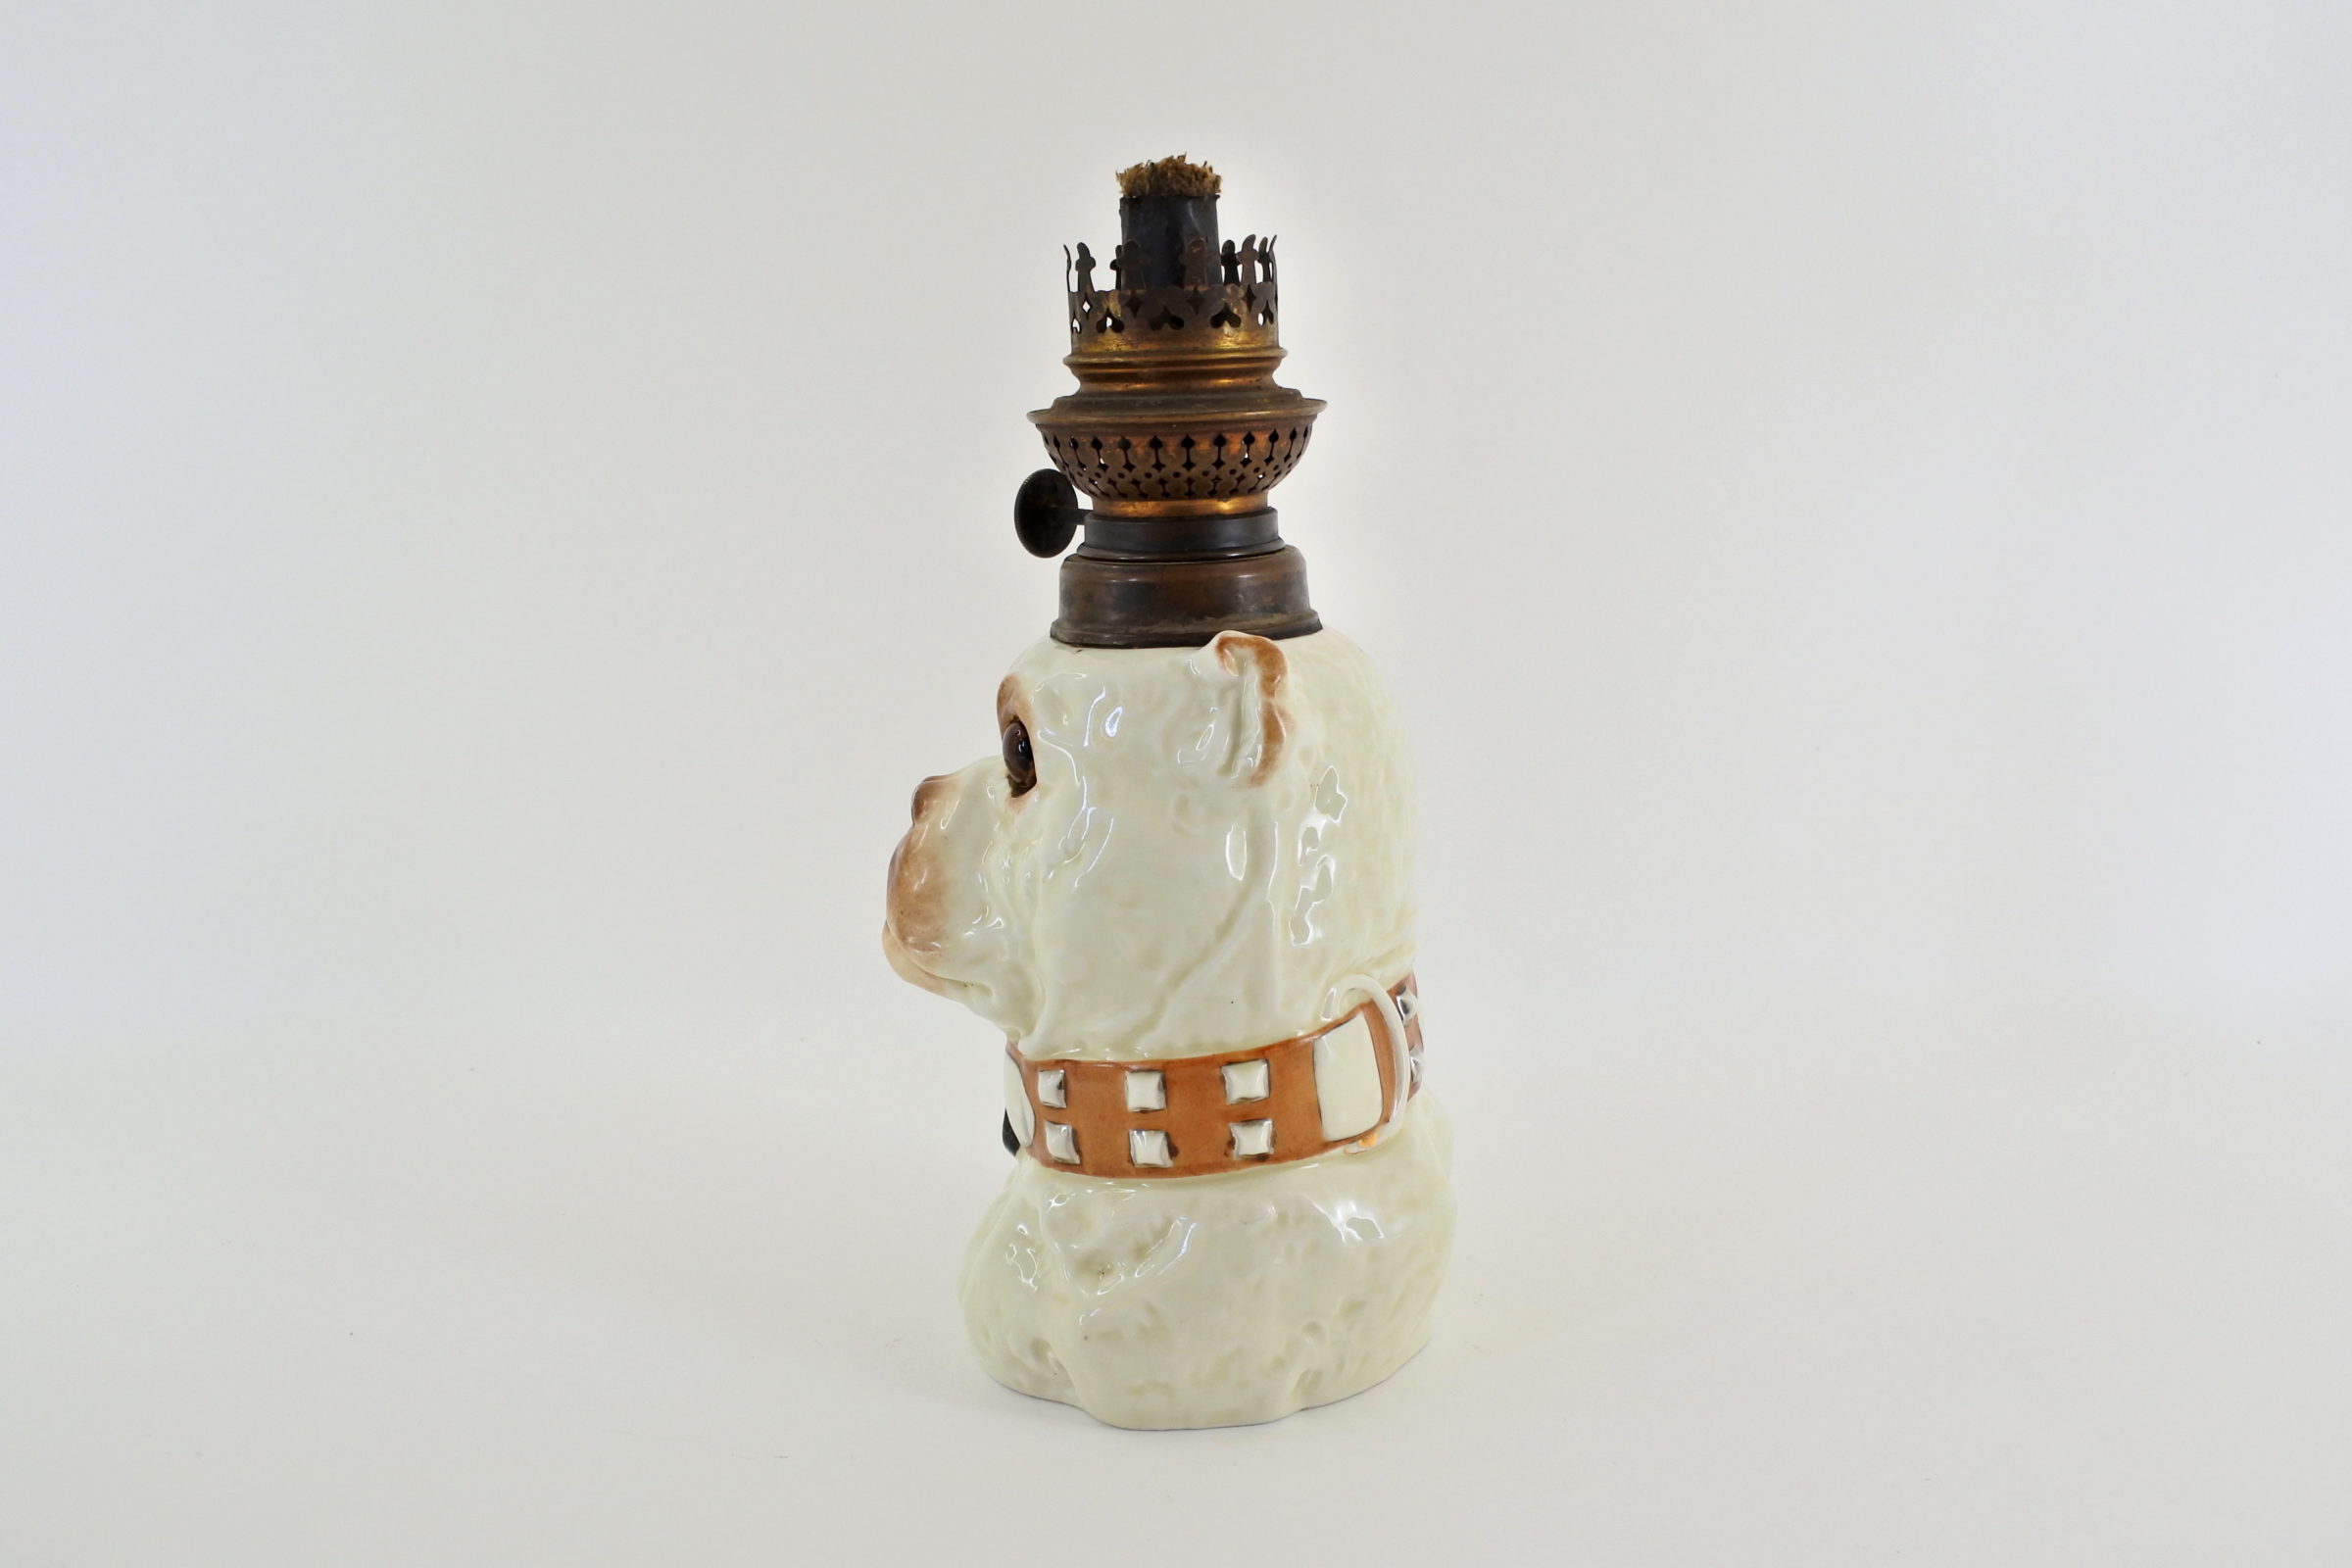 Lume a petrolio in ceramica barbotine a forma di cane bulldog - 2